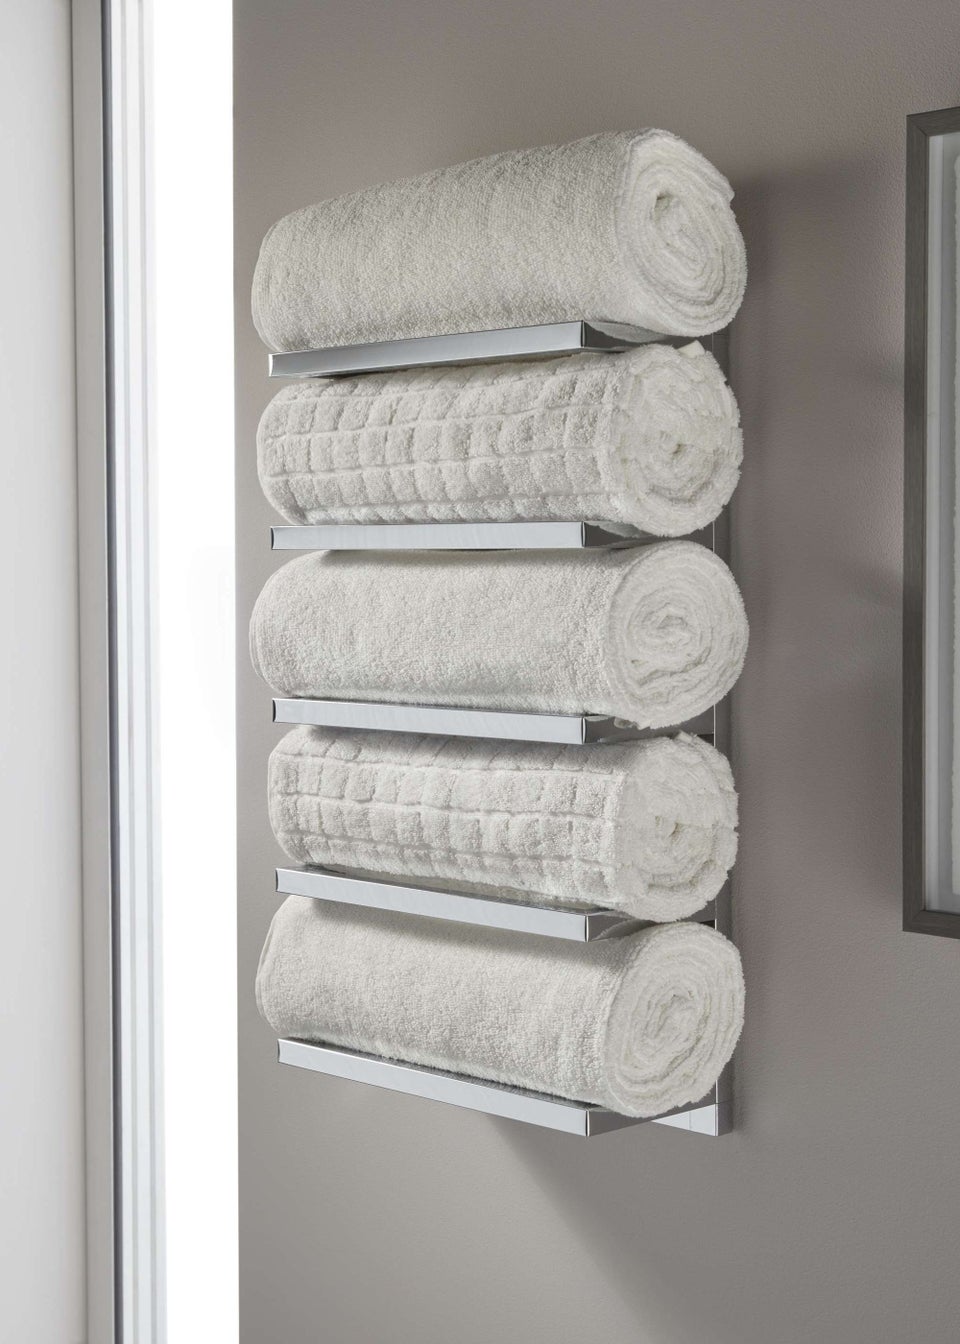 Lloyd Pascal 5 Tier Towel Rack Chrome